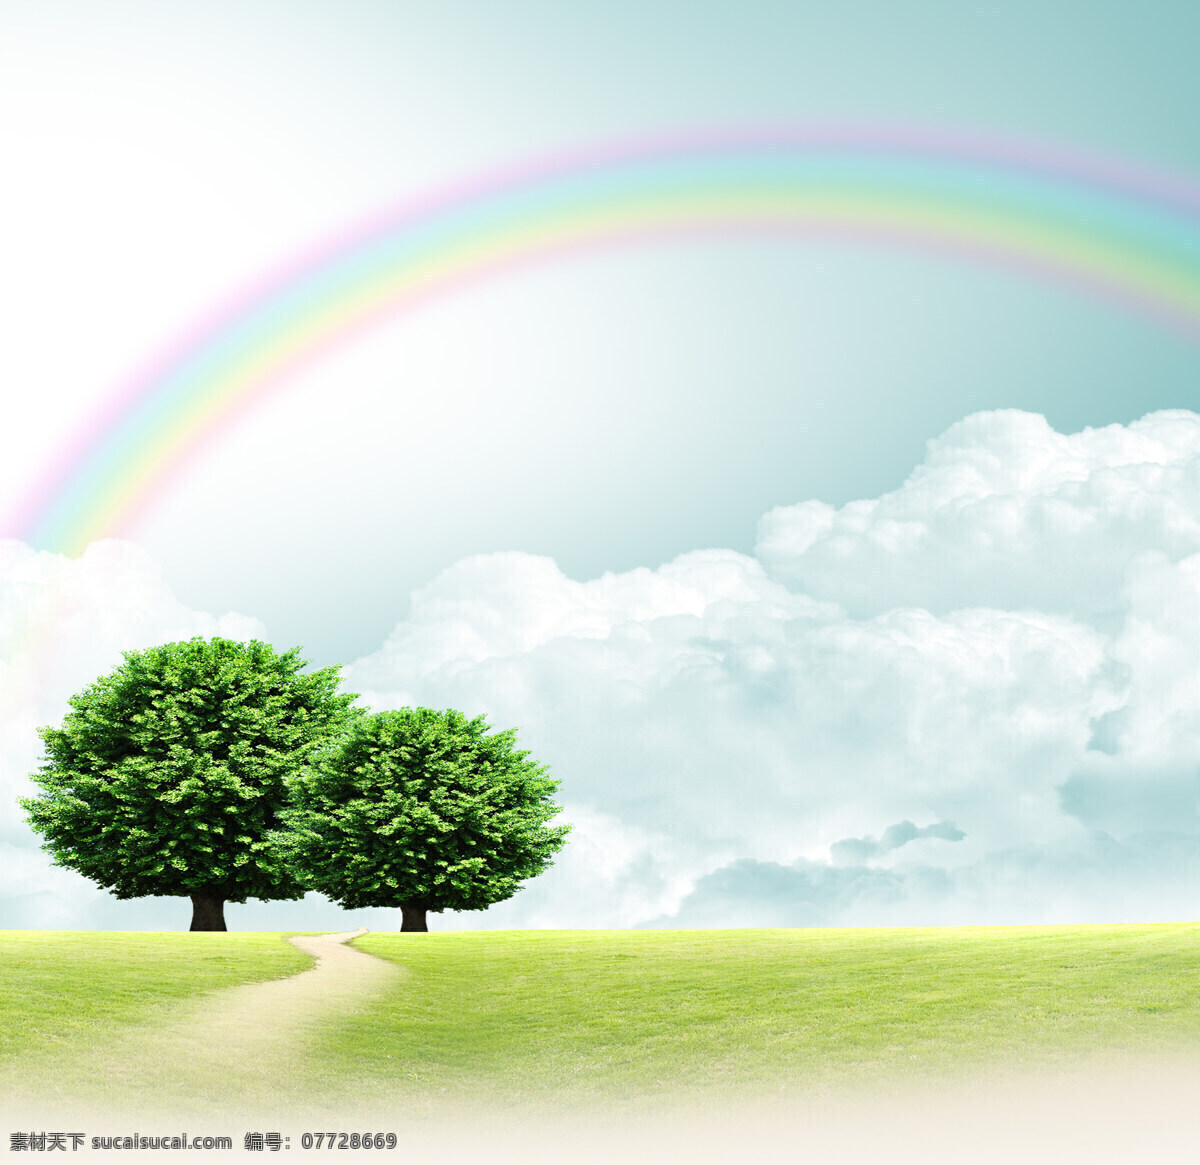 树木 小路 蓝天 彩虹 白云 草地 风景 美丽 大树 天空 自然景观 自然风光